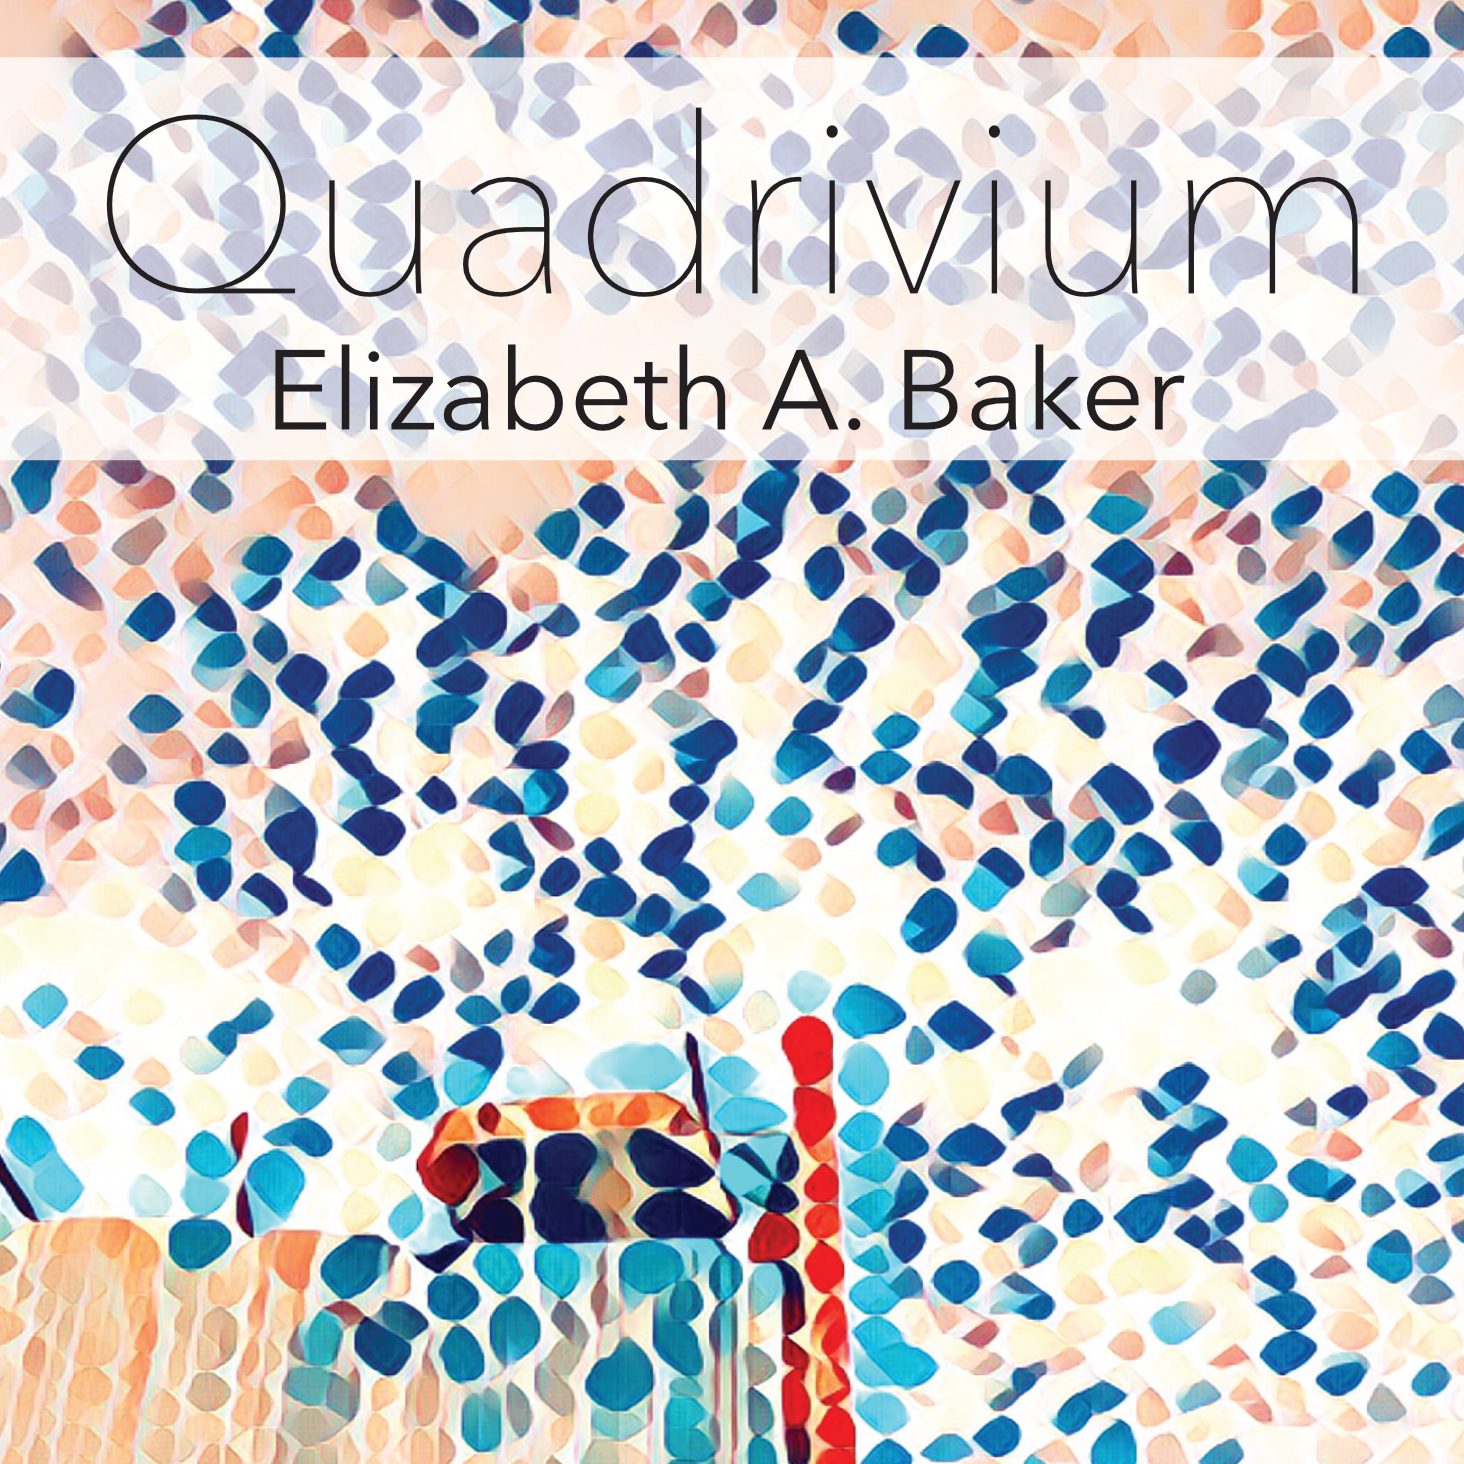 Quadrivium by Elizabeth A. Baker